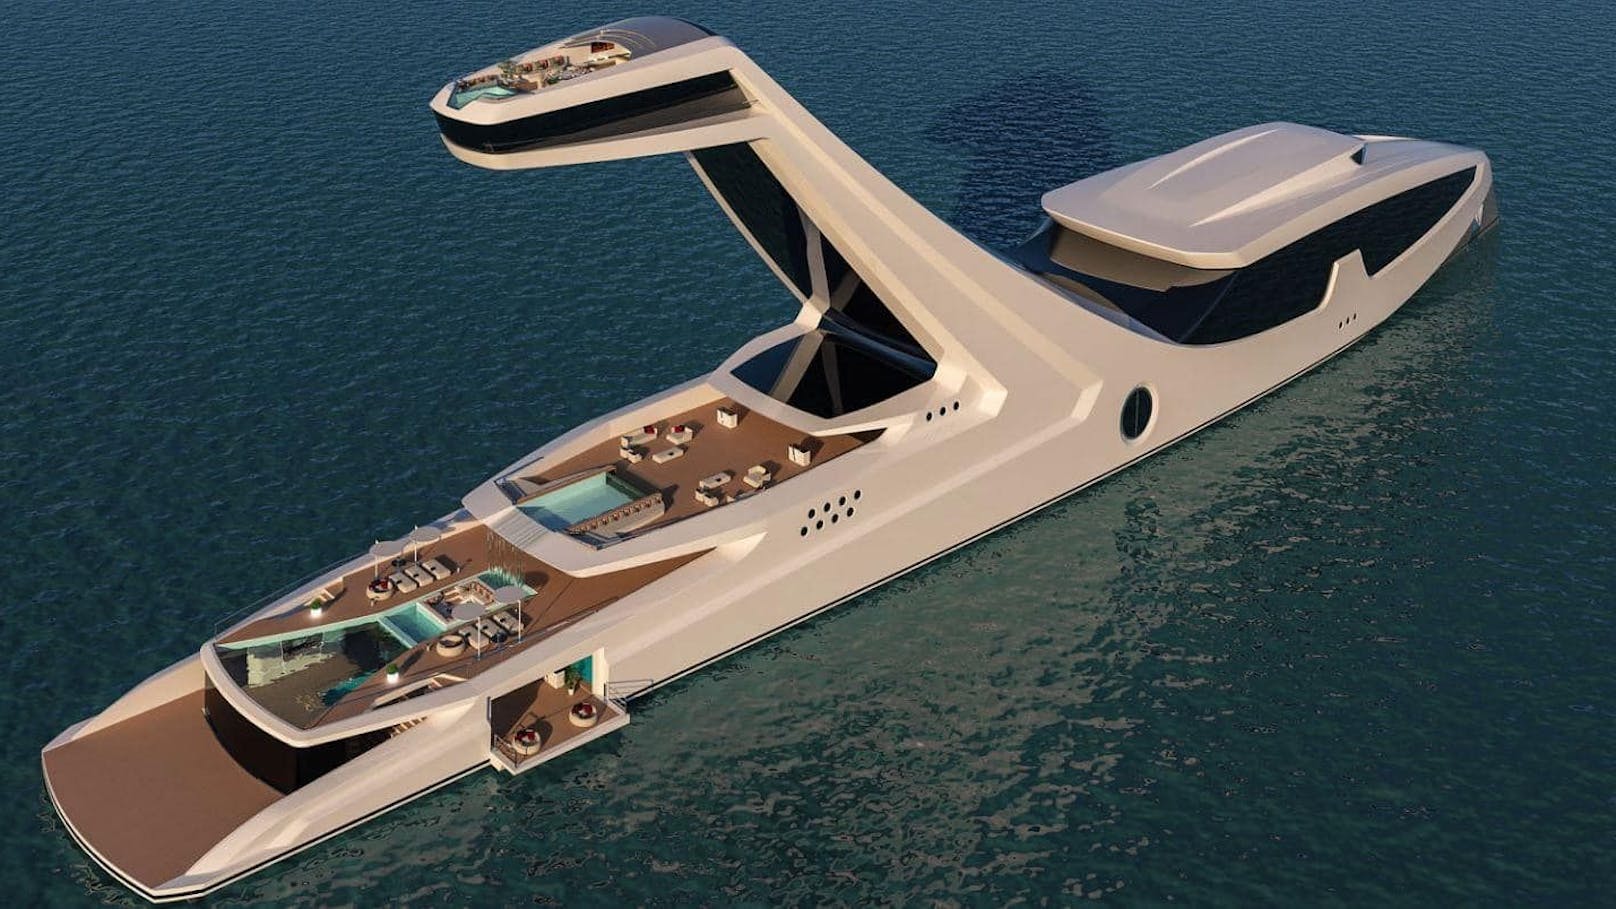 Diese raumschiffartige Superjacht namens "Shaddai" ist das Konzept des italienischen Designers <strong>Gabriele Teruzzi.</strong>